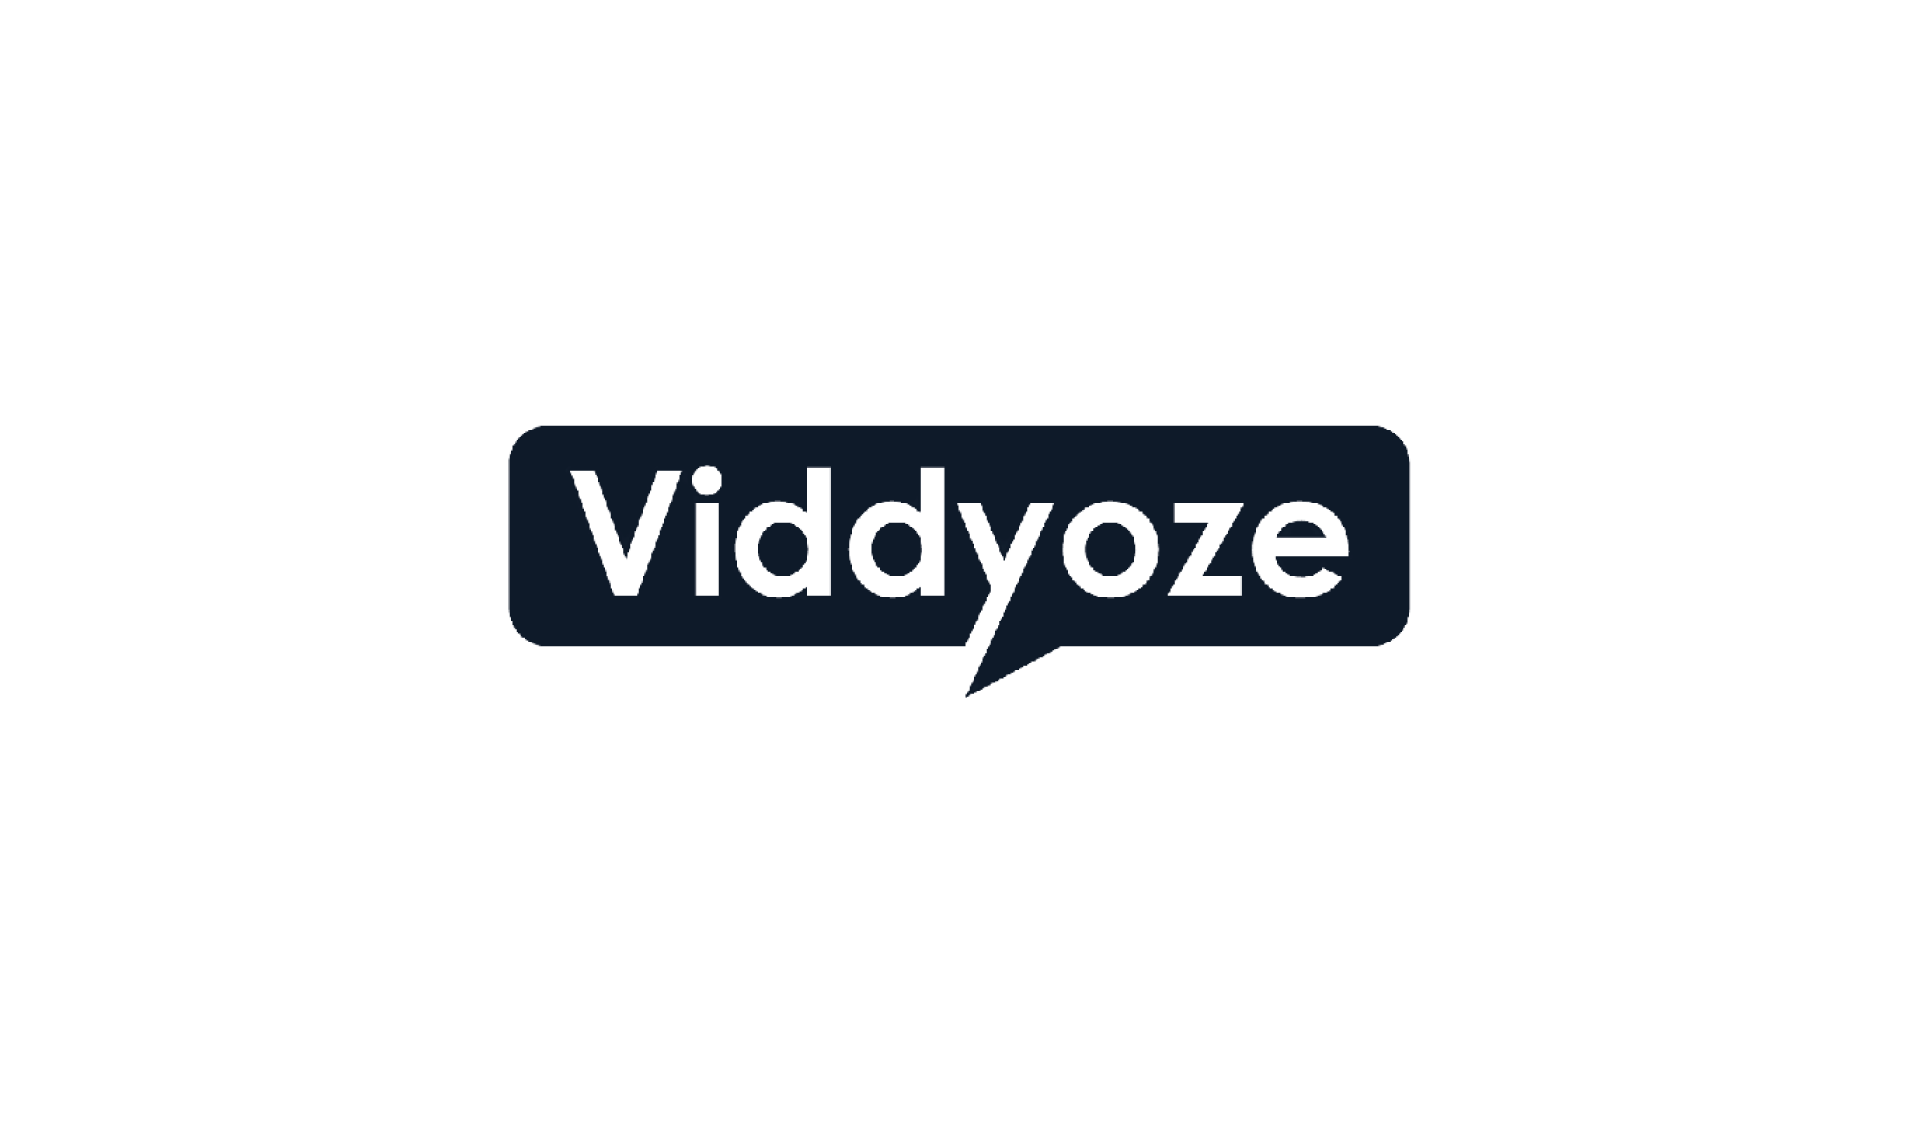 viddyoze logo